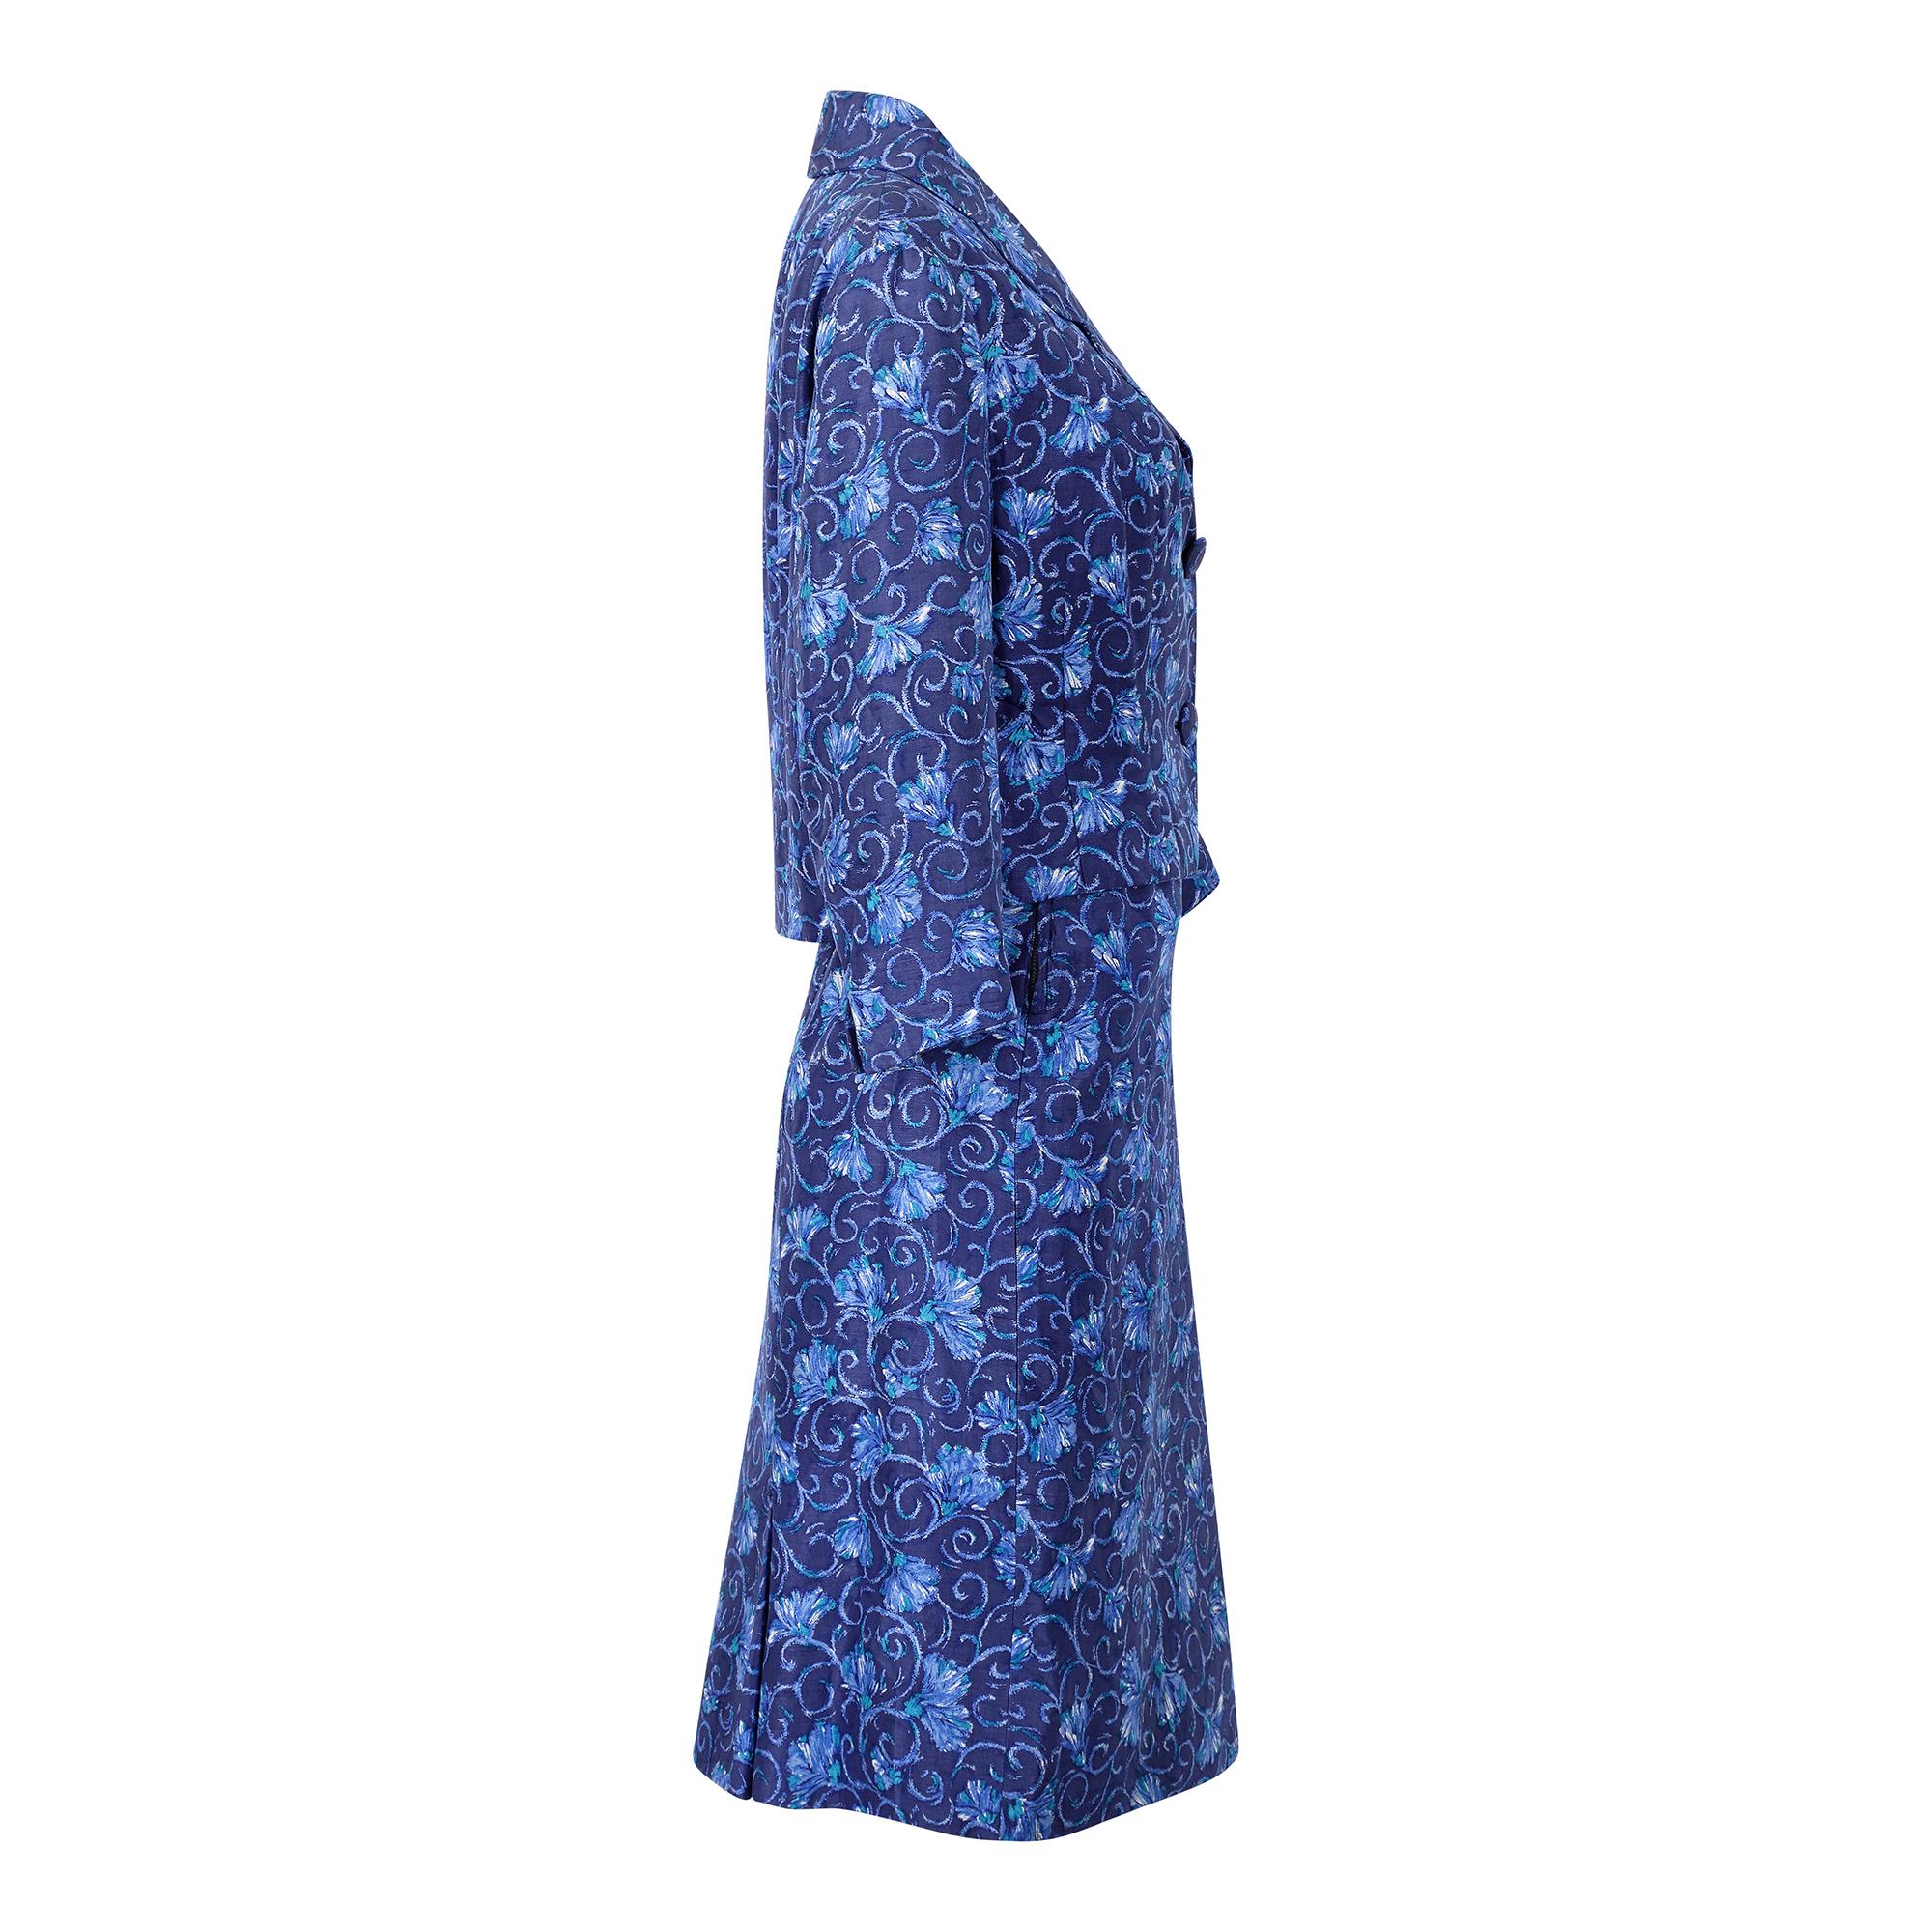 Ce tailleur-jupe original en soie des années 1950 est signé du couturier royal Hardy Amies, l'un des noms les plus connus de la mode mondaine britannique des années 50 et 60. D'un magnifique bleu vif, le tissu présente un motif floral défilant